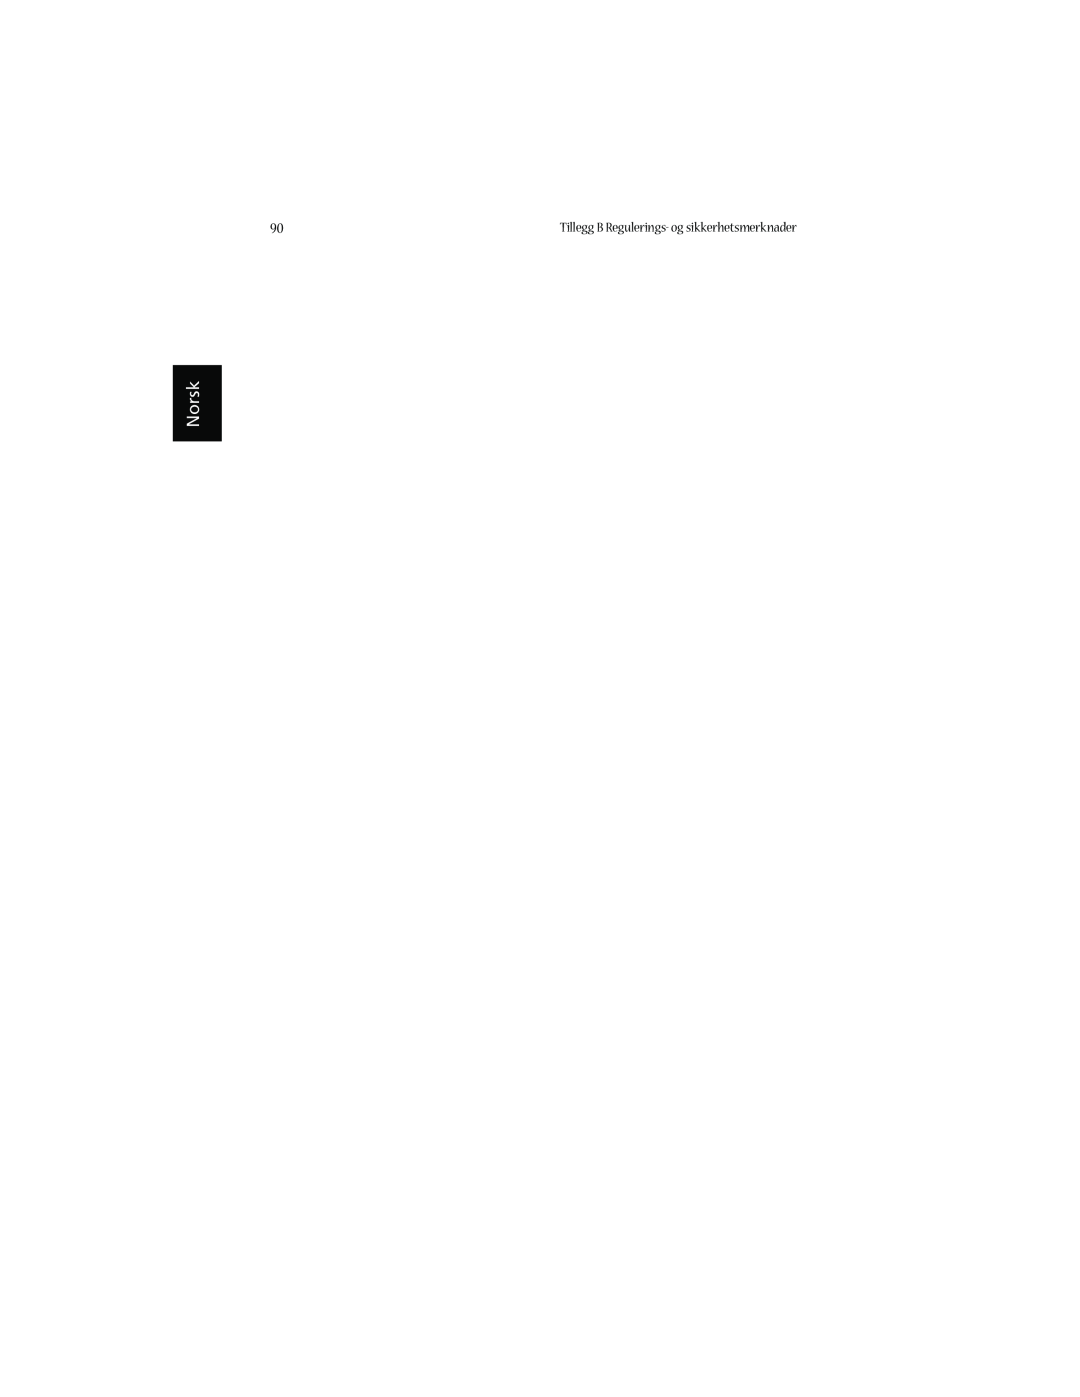 Acer 1660 manual Norsk, Tillegg B Regulerings- og sikkerhetsmerknader 